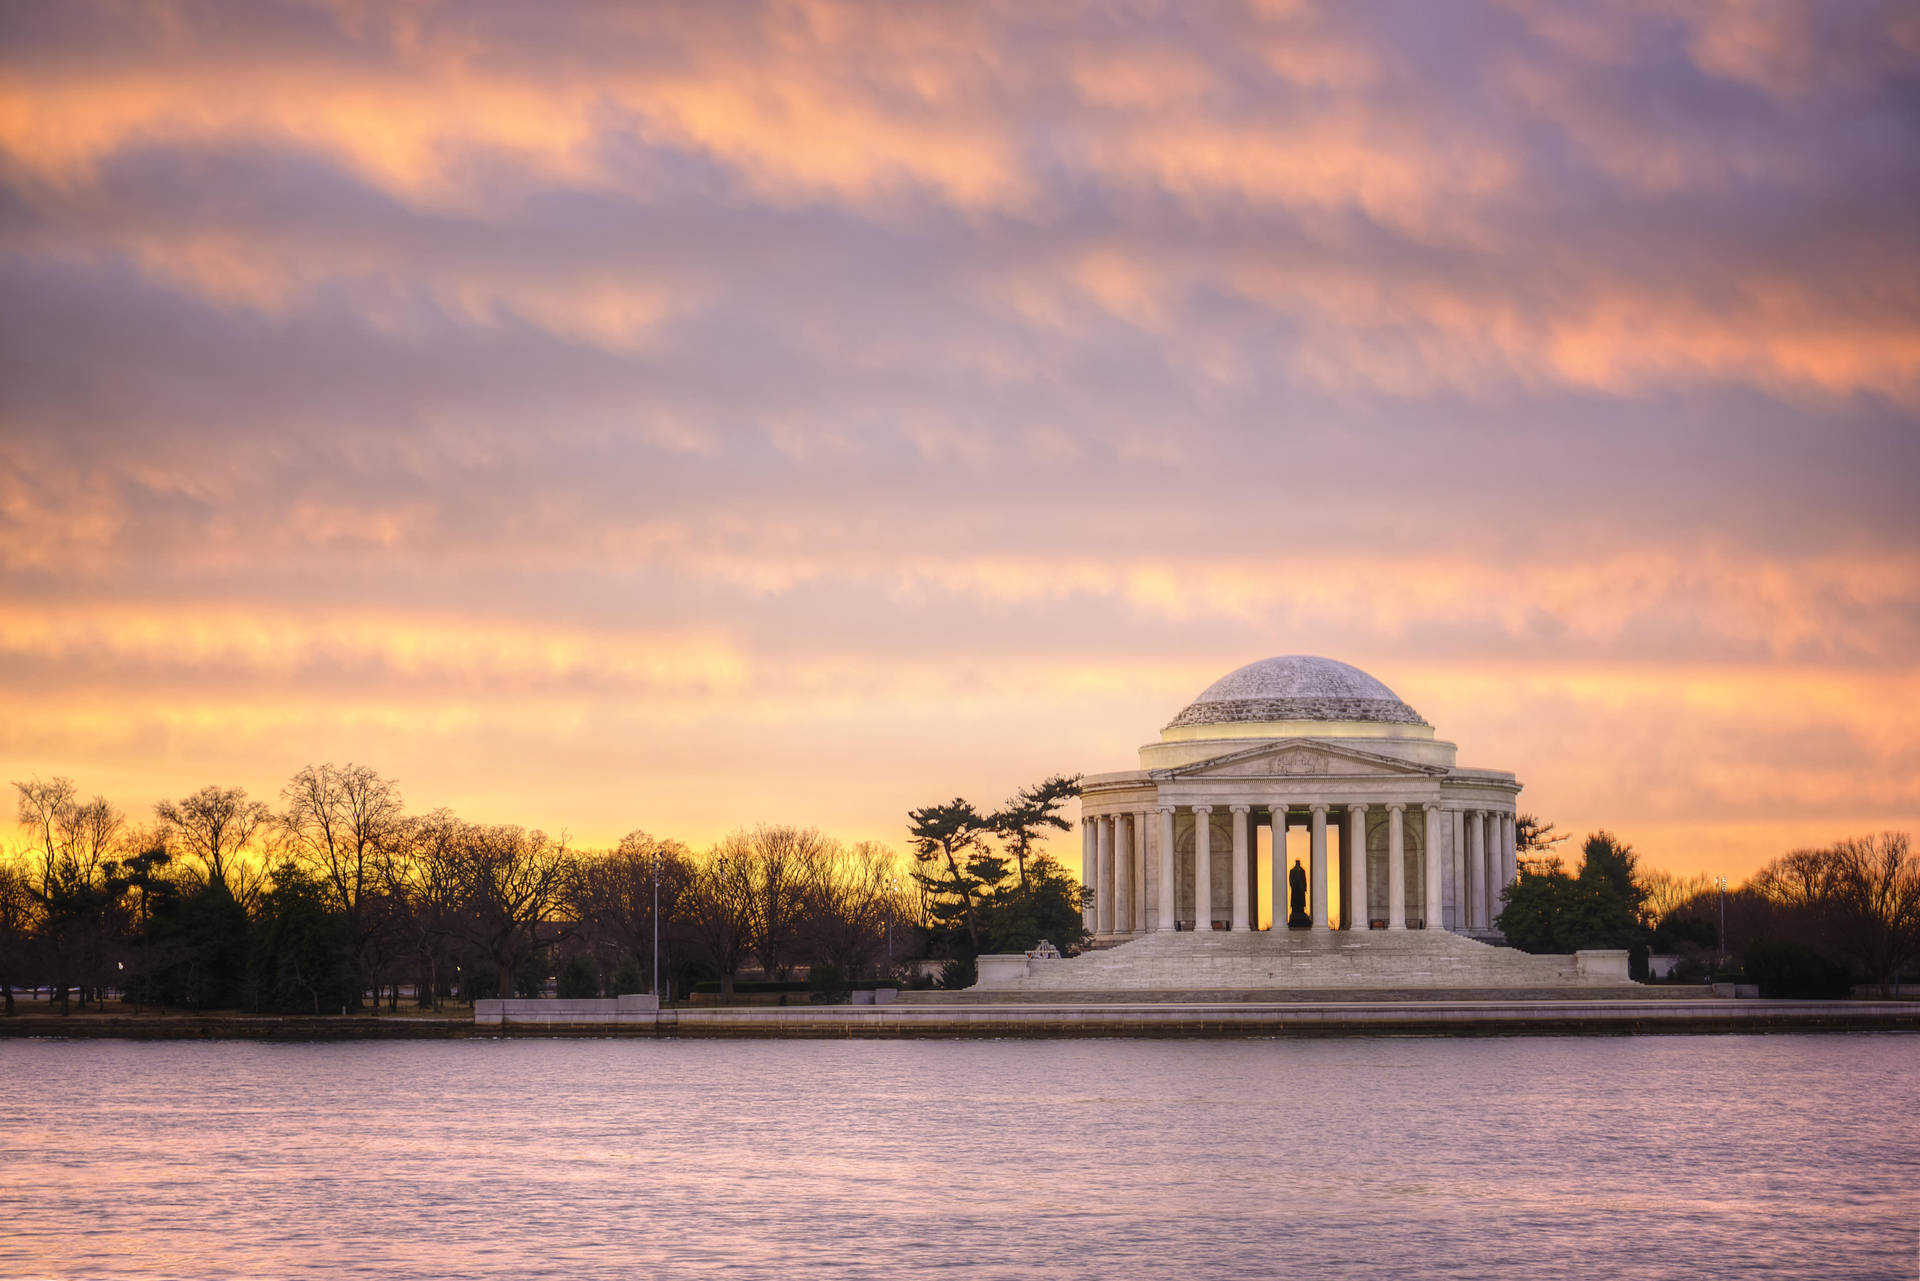 Jeffersonmemorial Wundervoller Sonnenuntergangshimmel Wallpaper